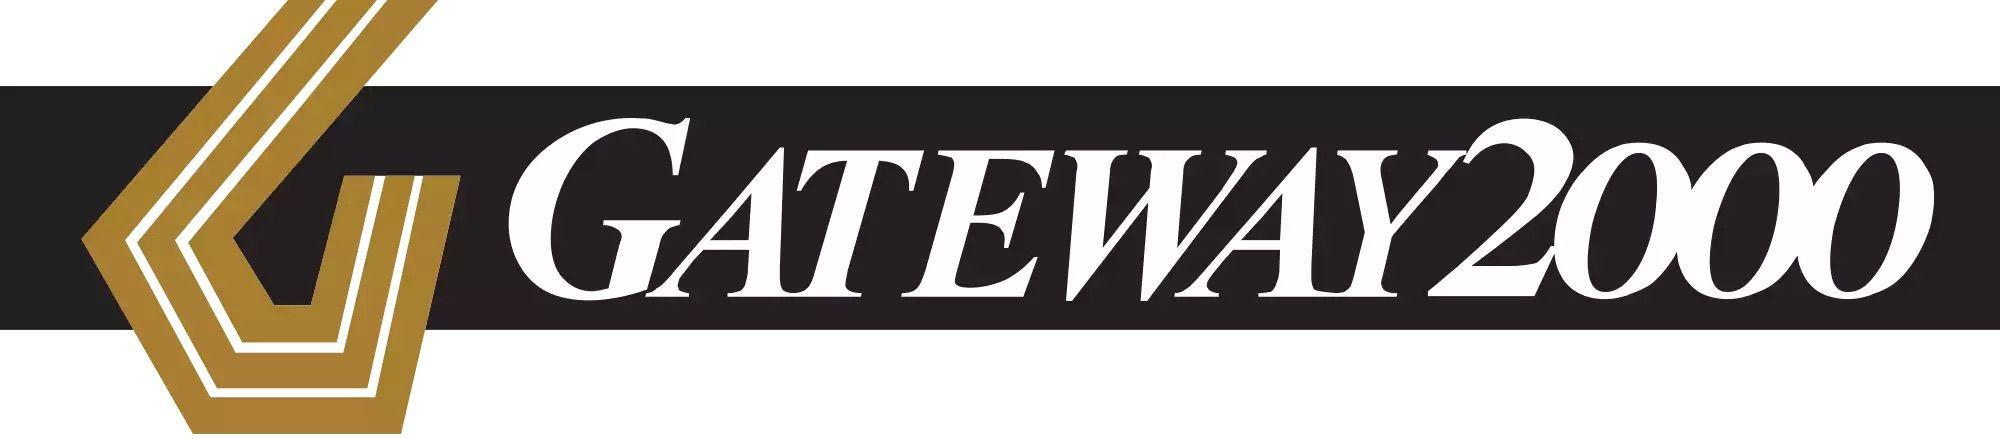 Old Gateway Logo - This Gateway 2000 logo : nostalgia